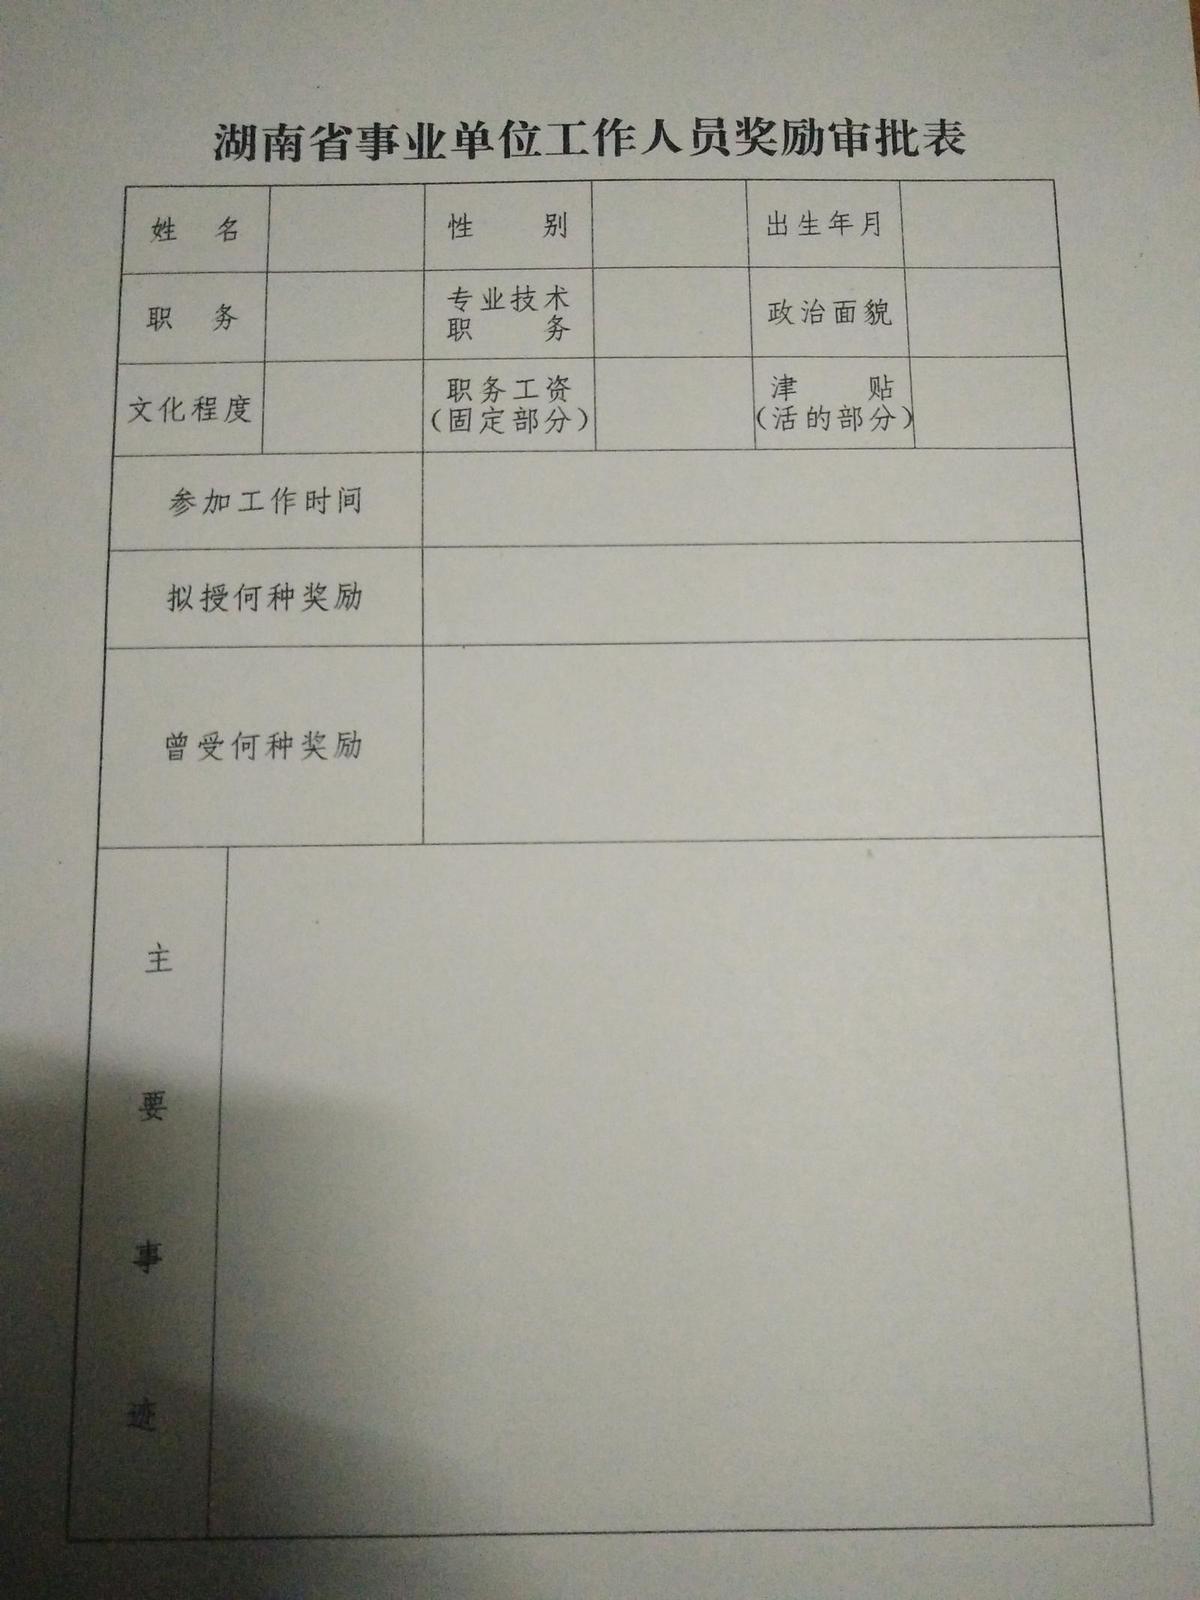 湖南省事业单位工作人员奖励审批表  空白